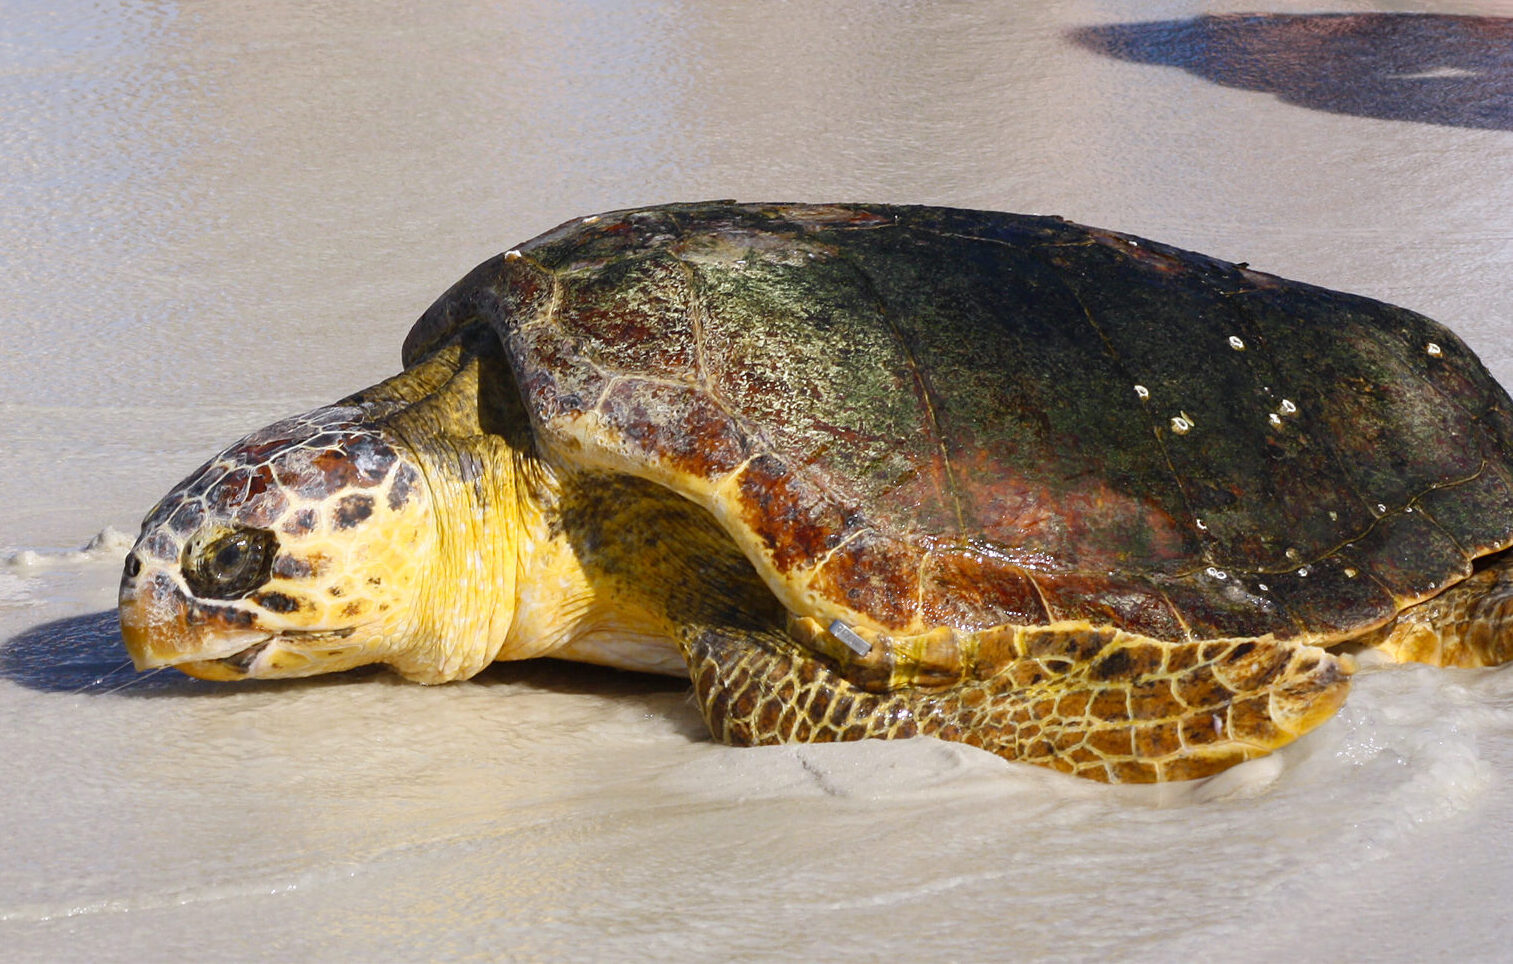 A Loggerhead Sea Turtle rehabilitated and heading back to the Gulf.